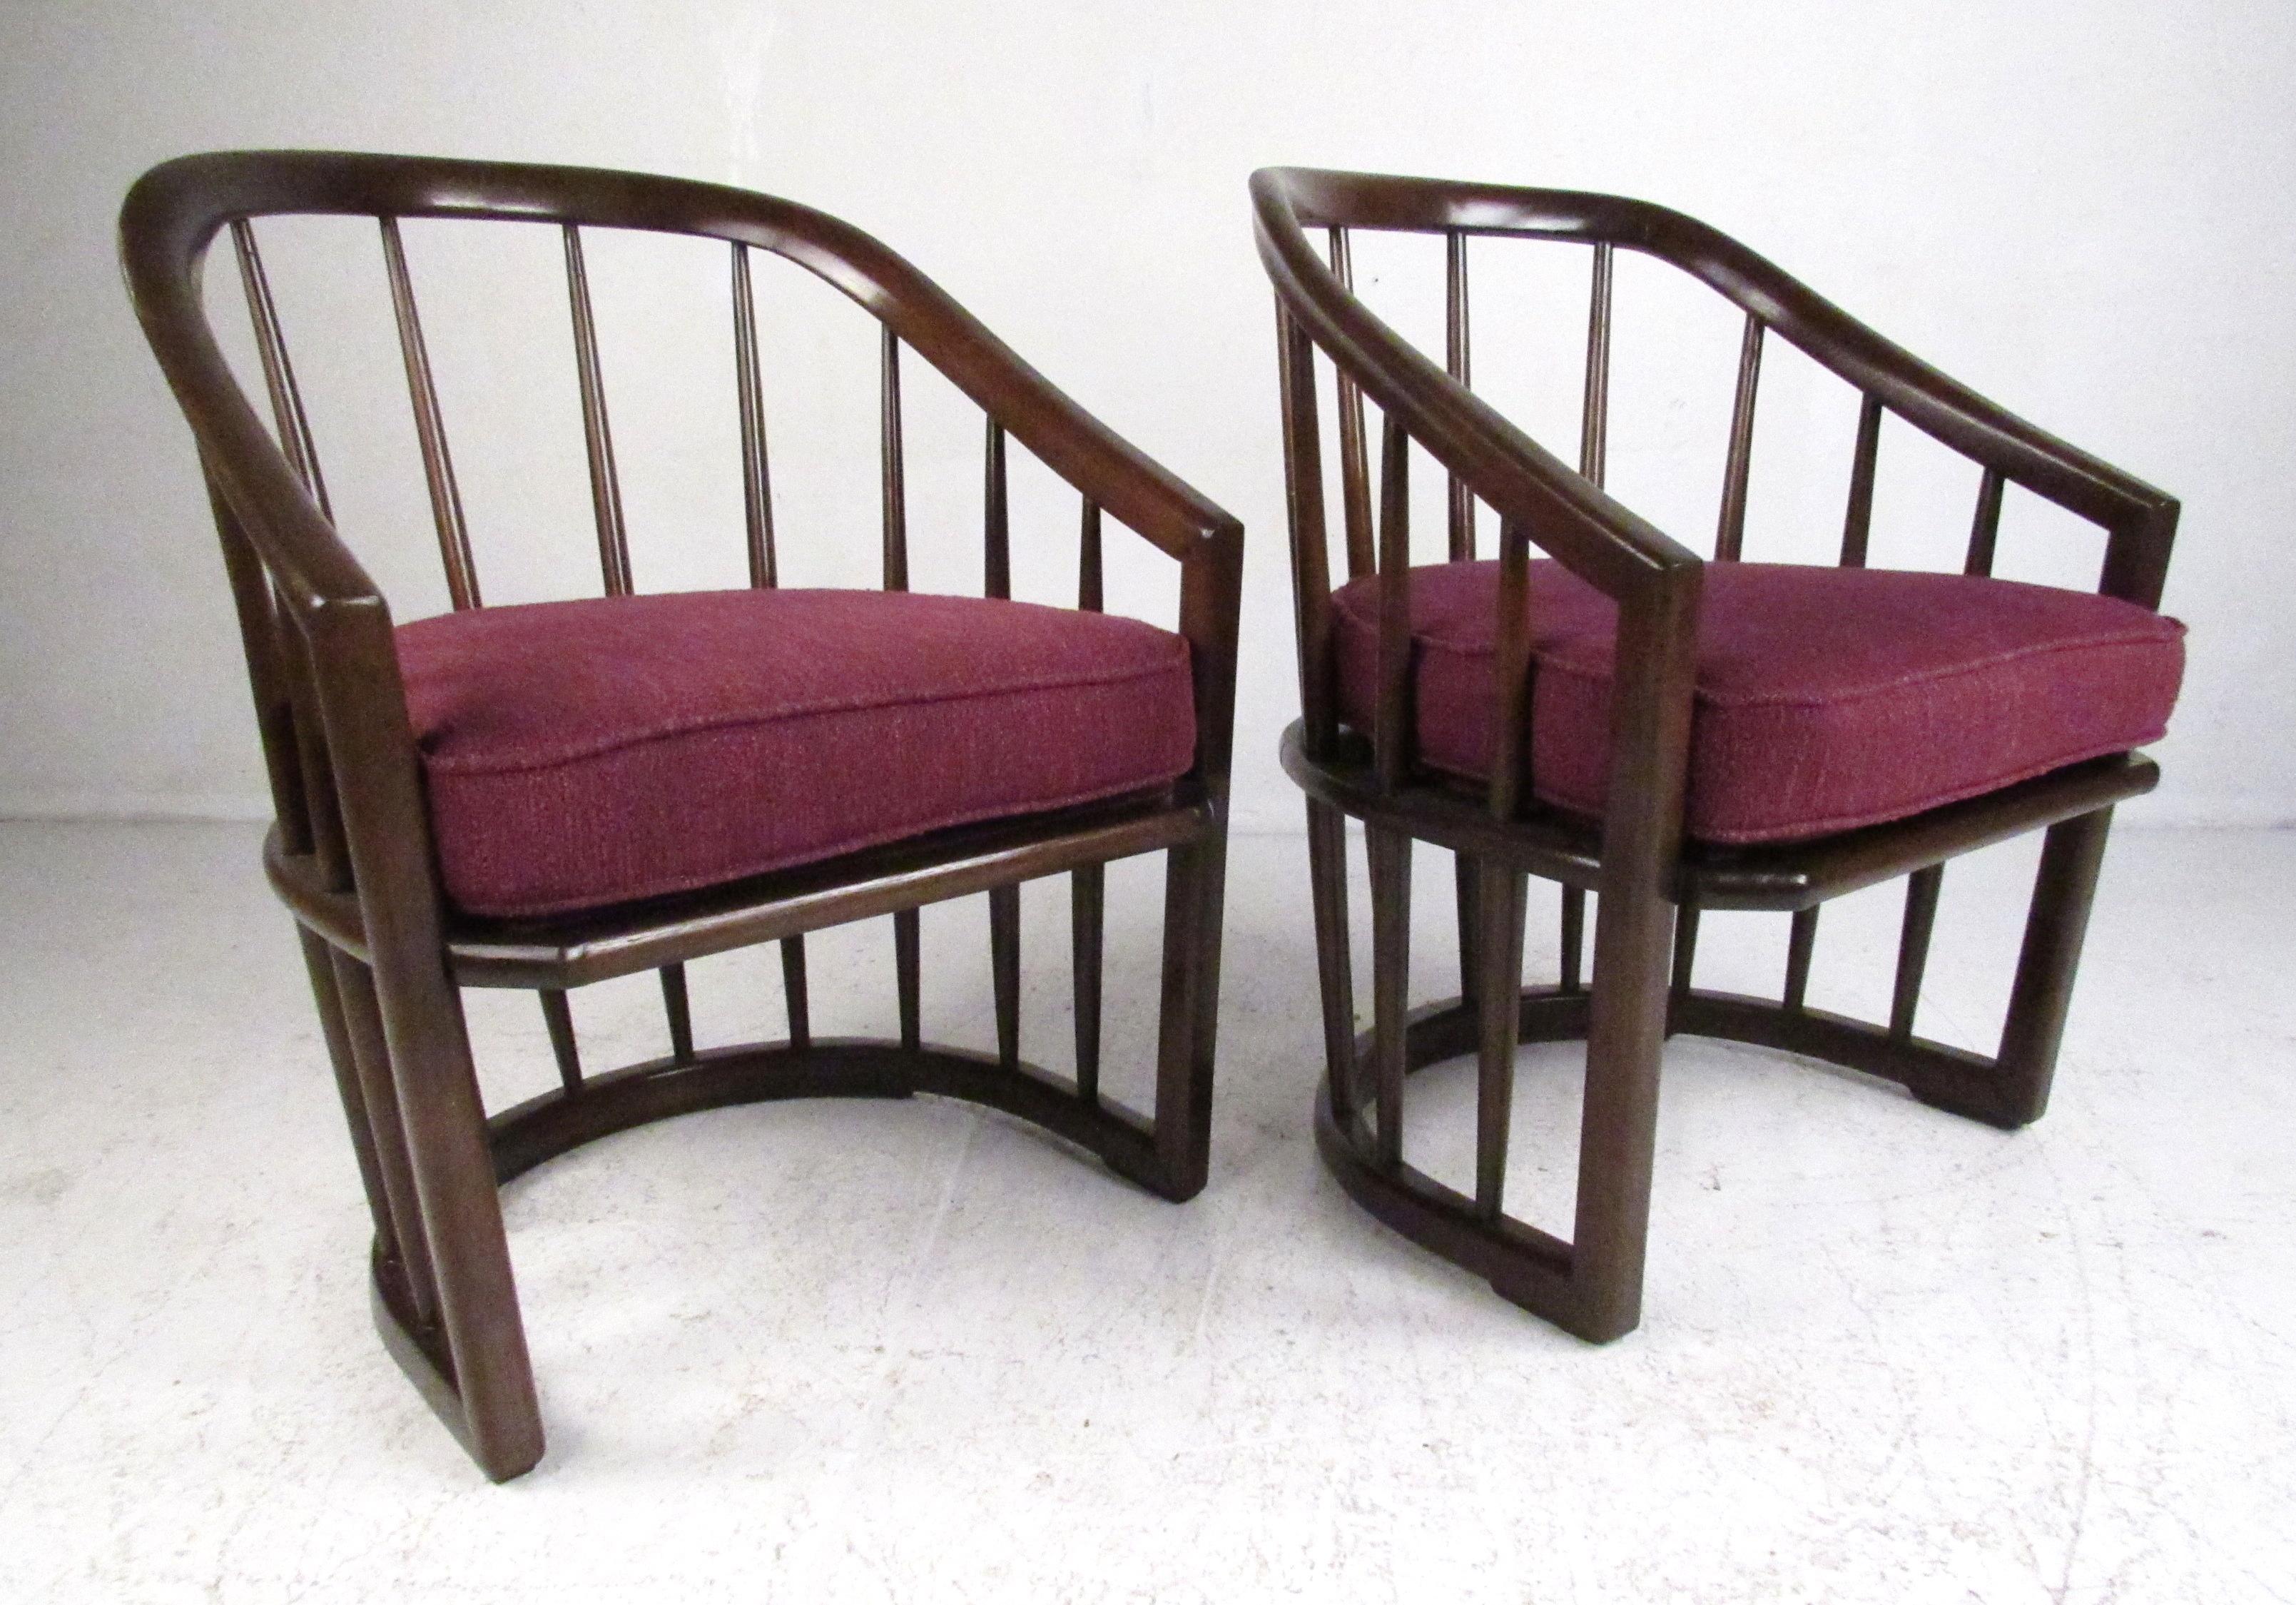 Kürzlich restaurierte Stühle mit Fassrücken aus Nussbaumholz und traubenfarbener Polsterung. Bitte bestätigen Sie den Standort des Artikels (NY oder NJ) mit dem Händler.